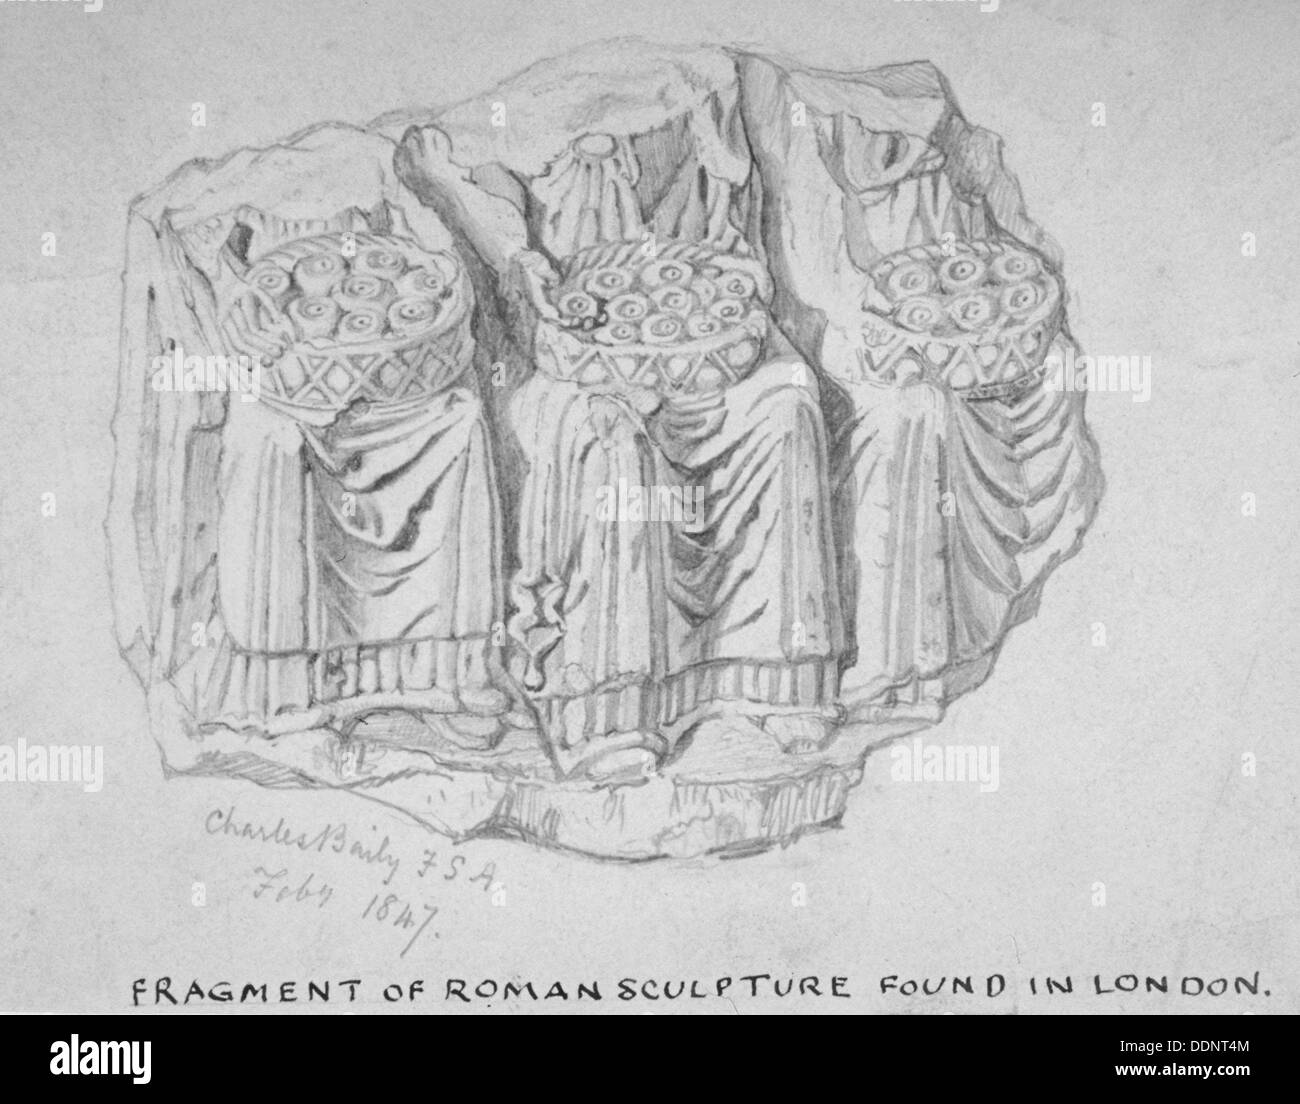 Frammento di scultura romana trovati nella Hart Street, Crutched Frati, città di Londra, 1847. Artista: Charles Baily Foto Stock